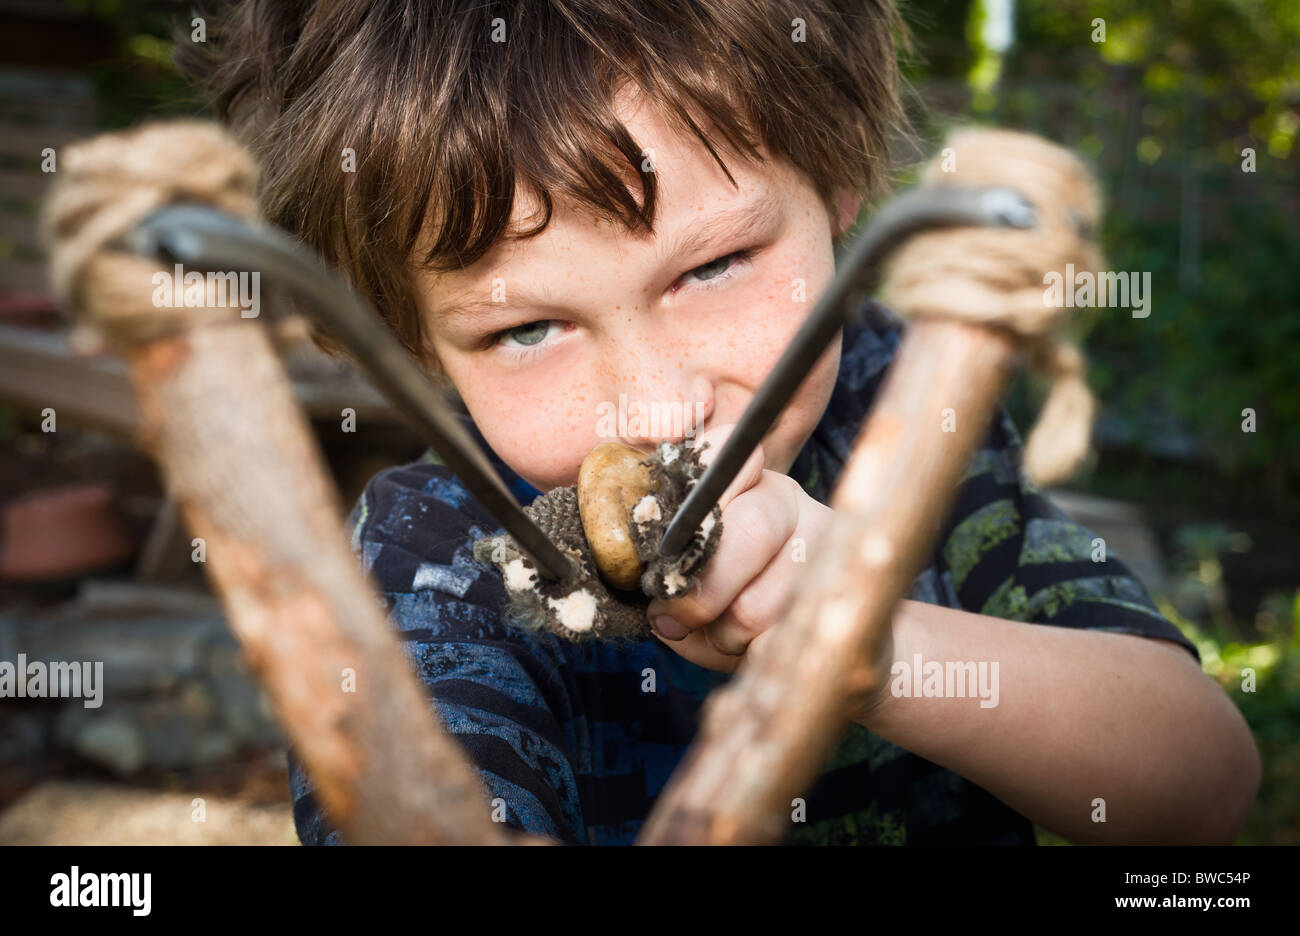 Boy aiming catapult Stock Photo